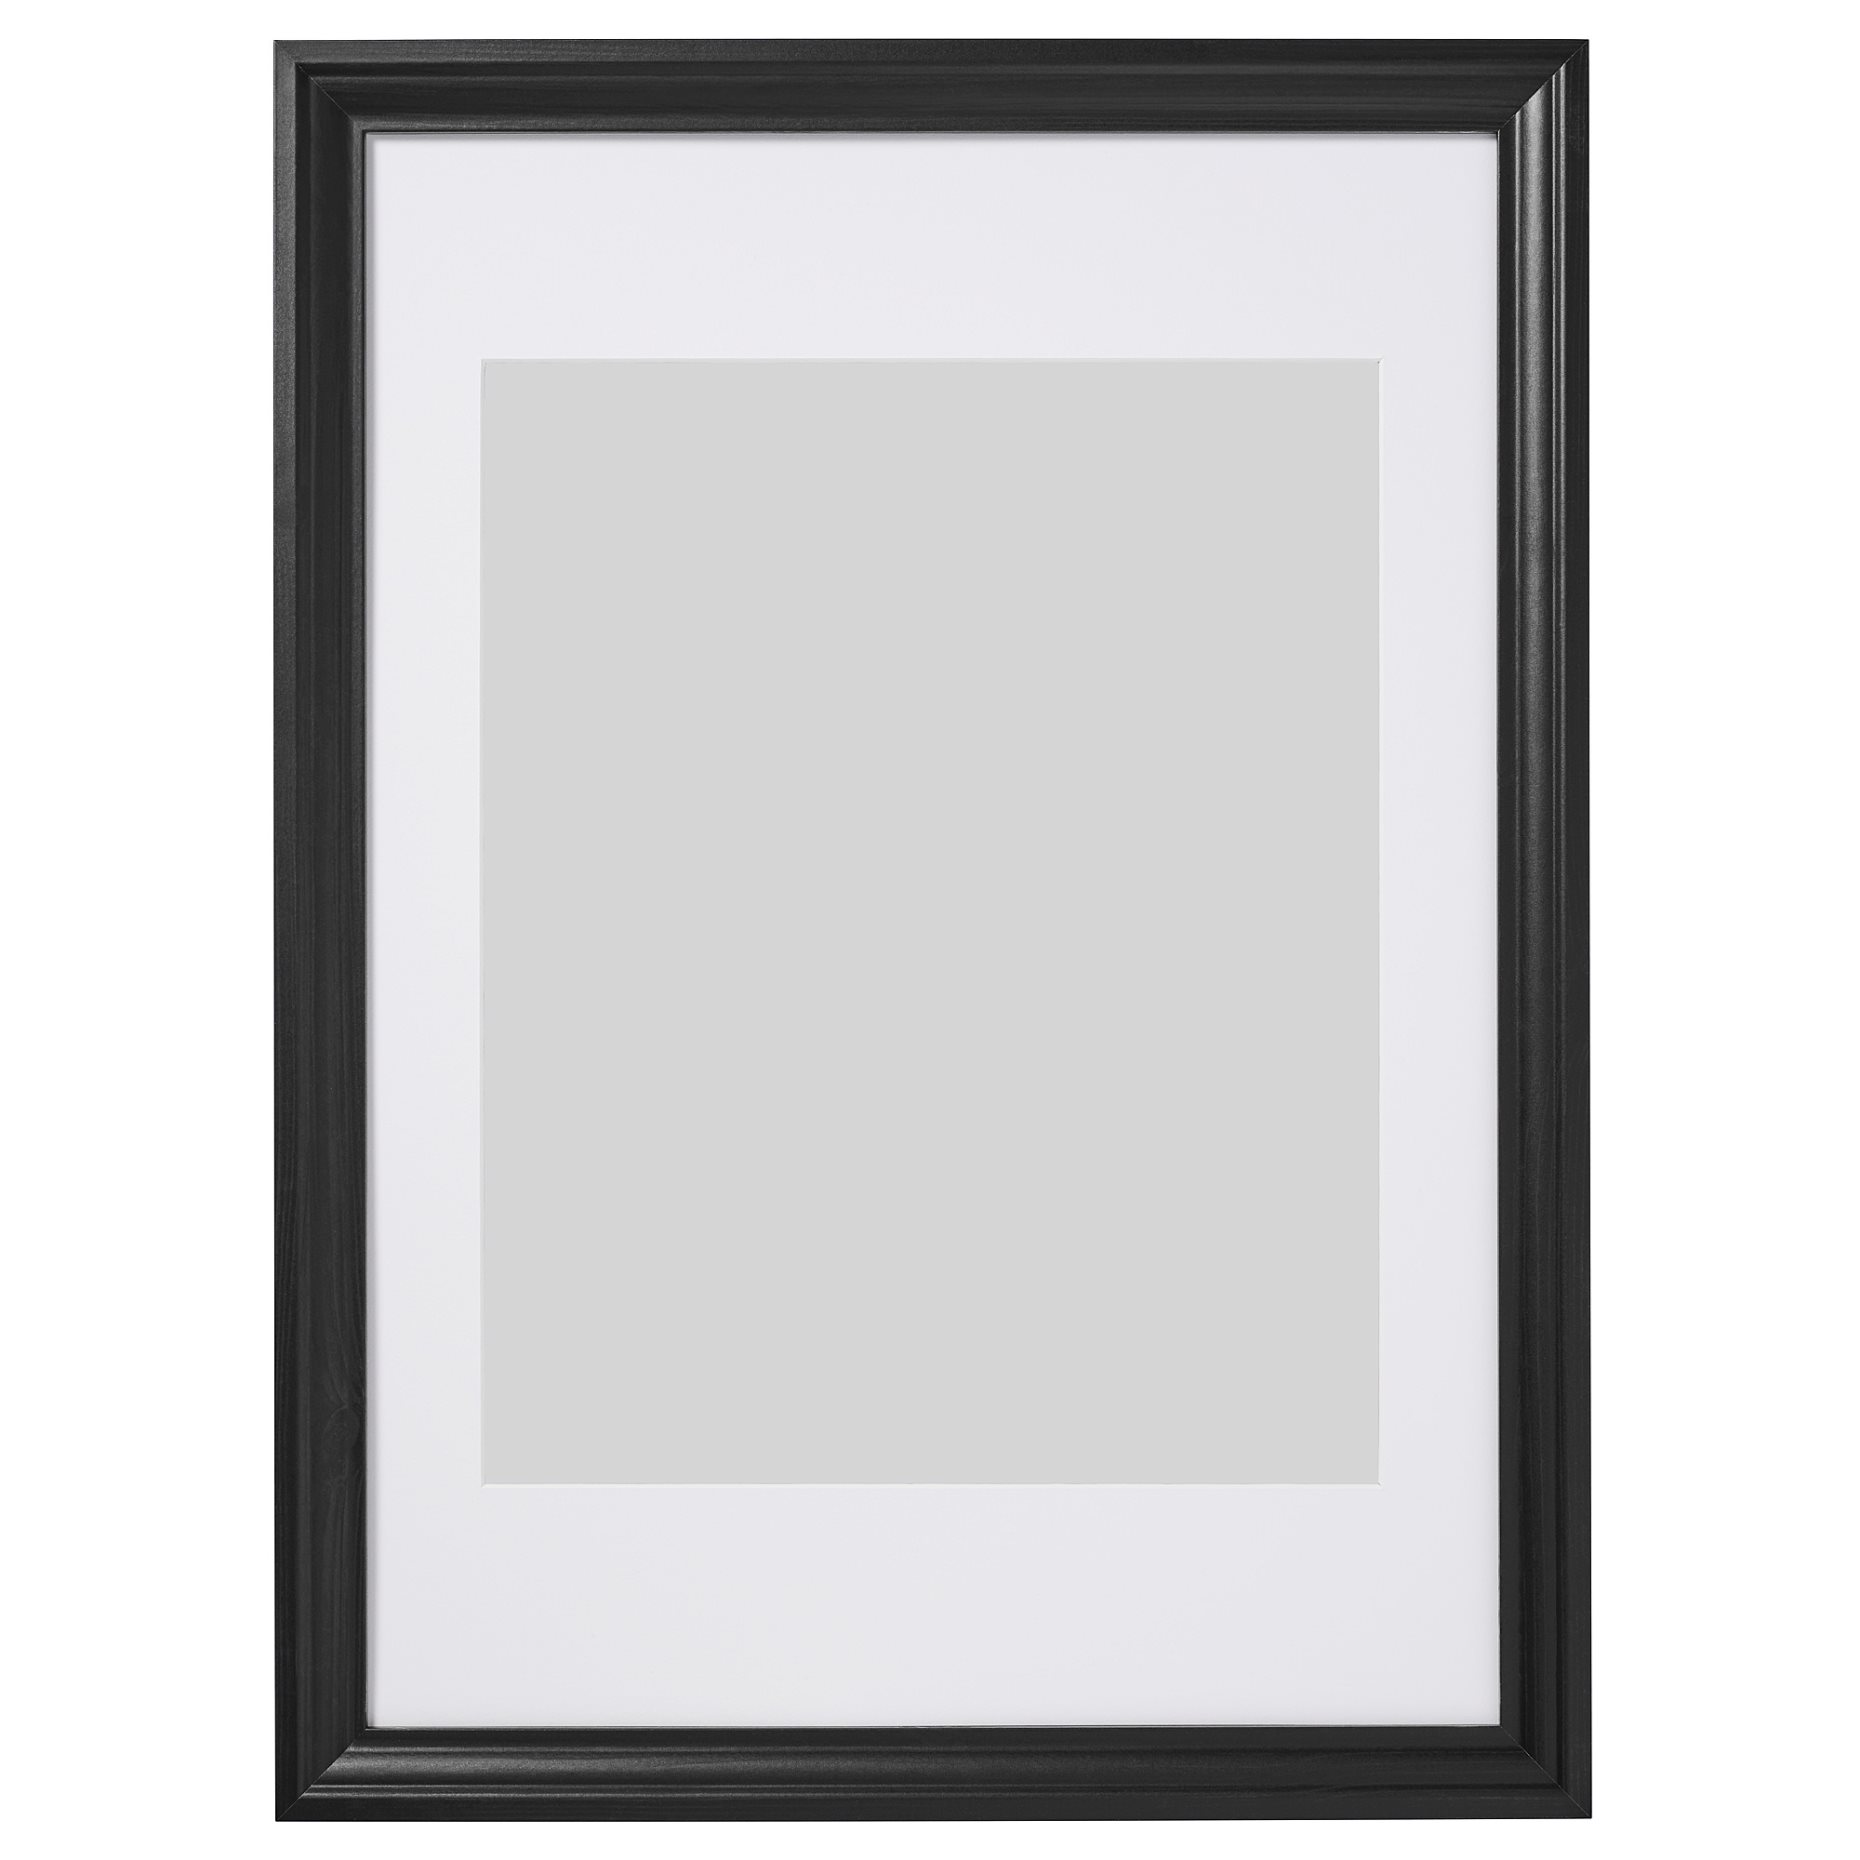 EDSBRUK, frame, 50x70 cm, 504.276.32